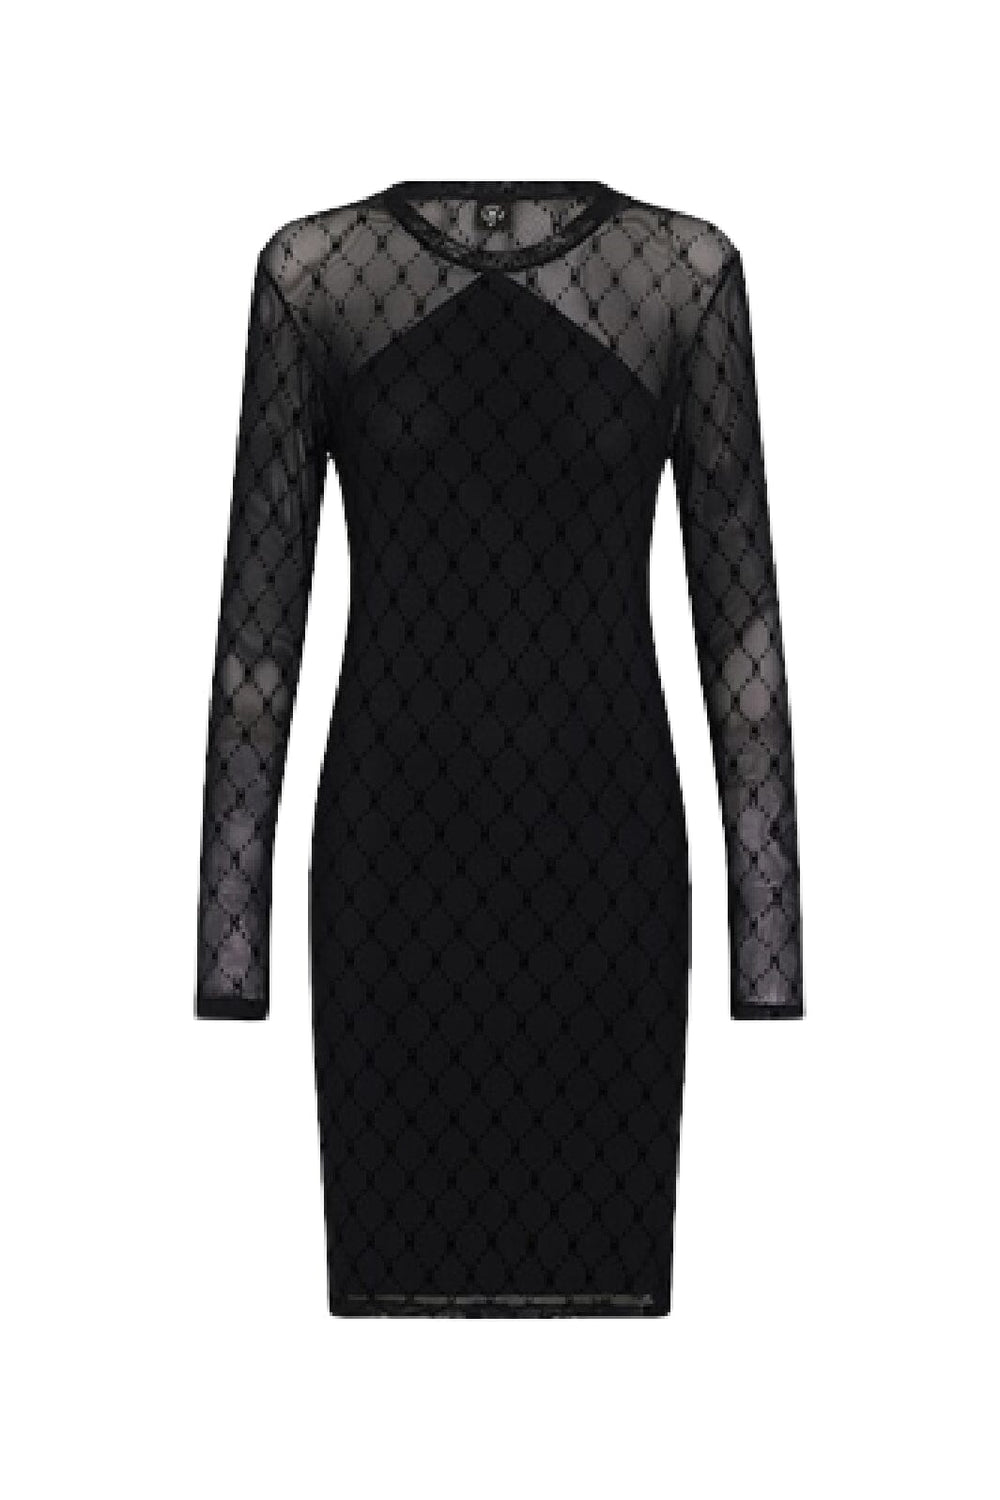 Hype The Detail - Mesh Dress - 9 Black Kjoler 